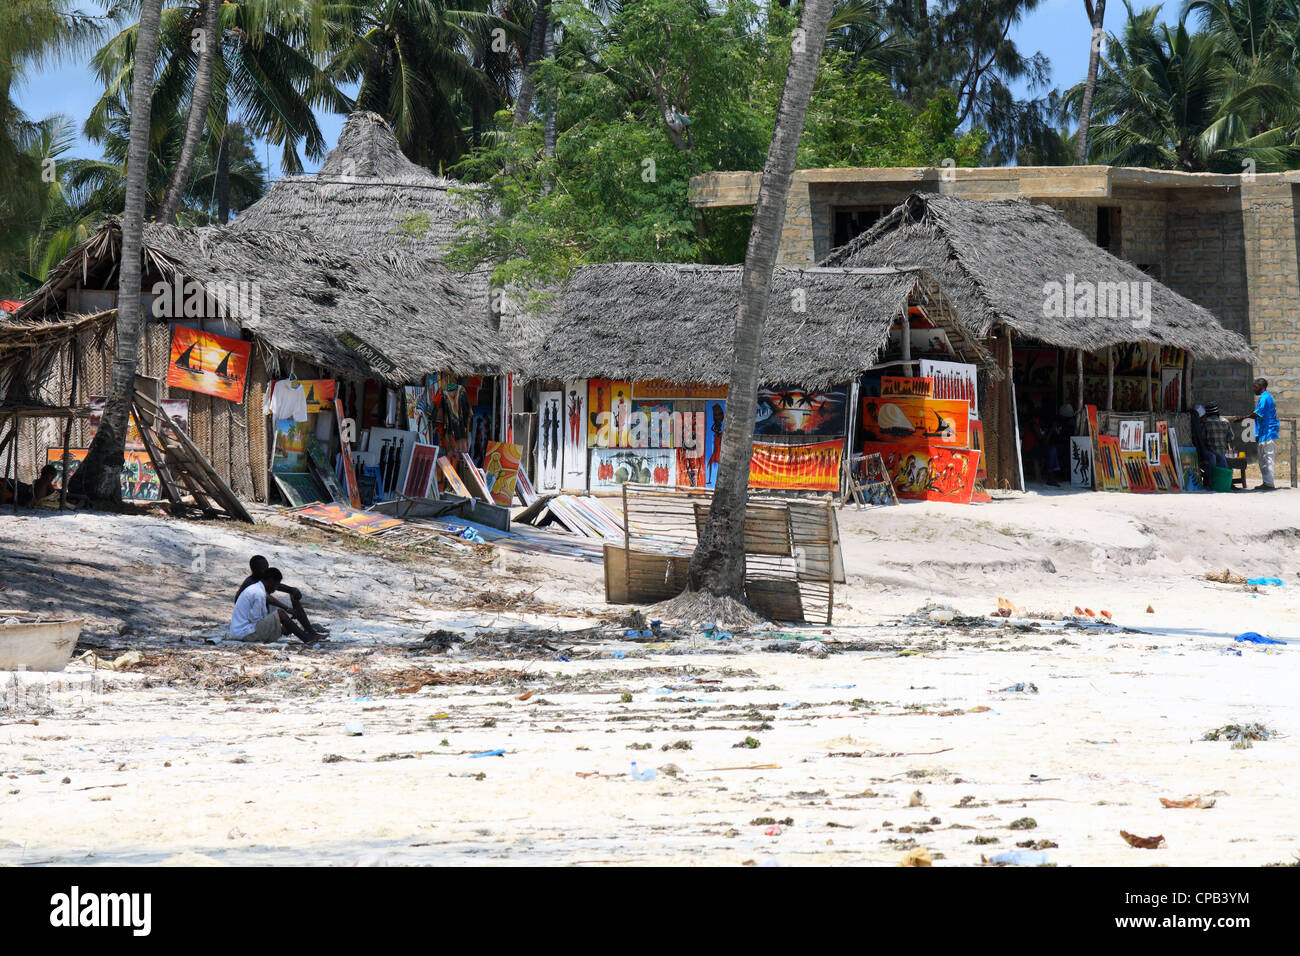 Un village des artistes sur la plage à Zanzibar Banque D'Images